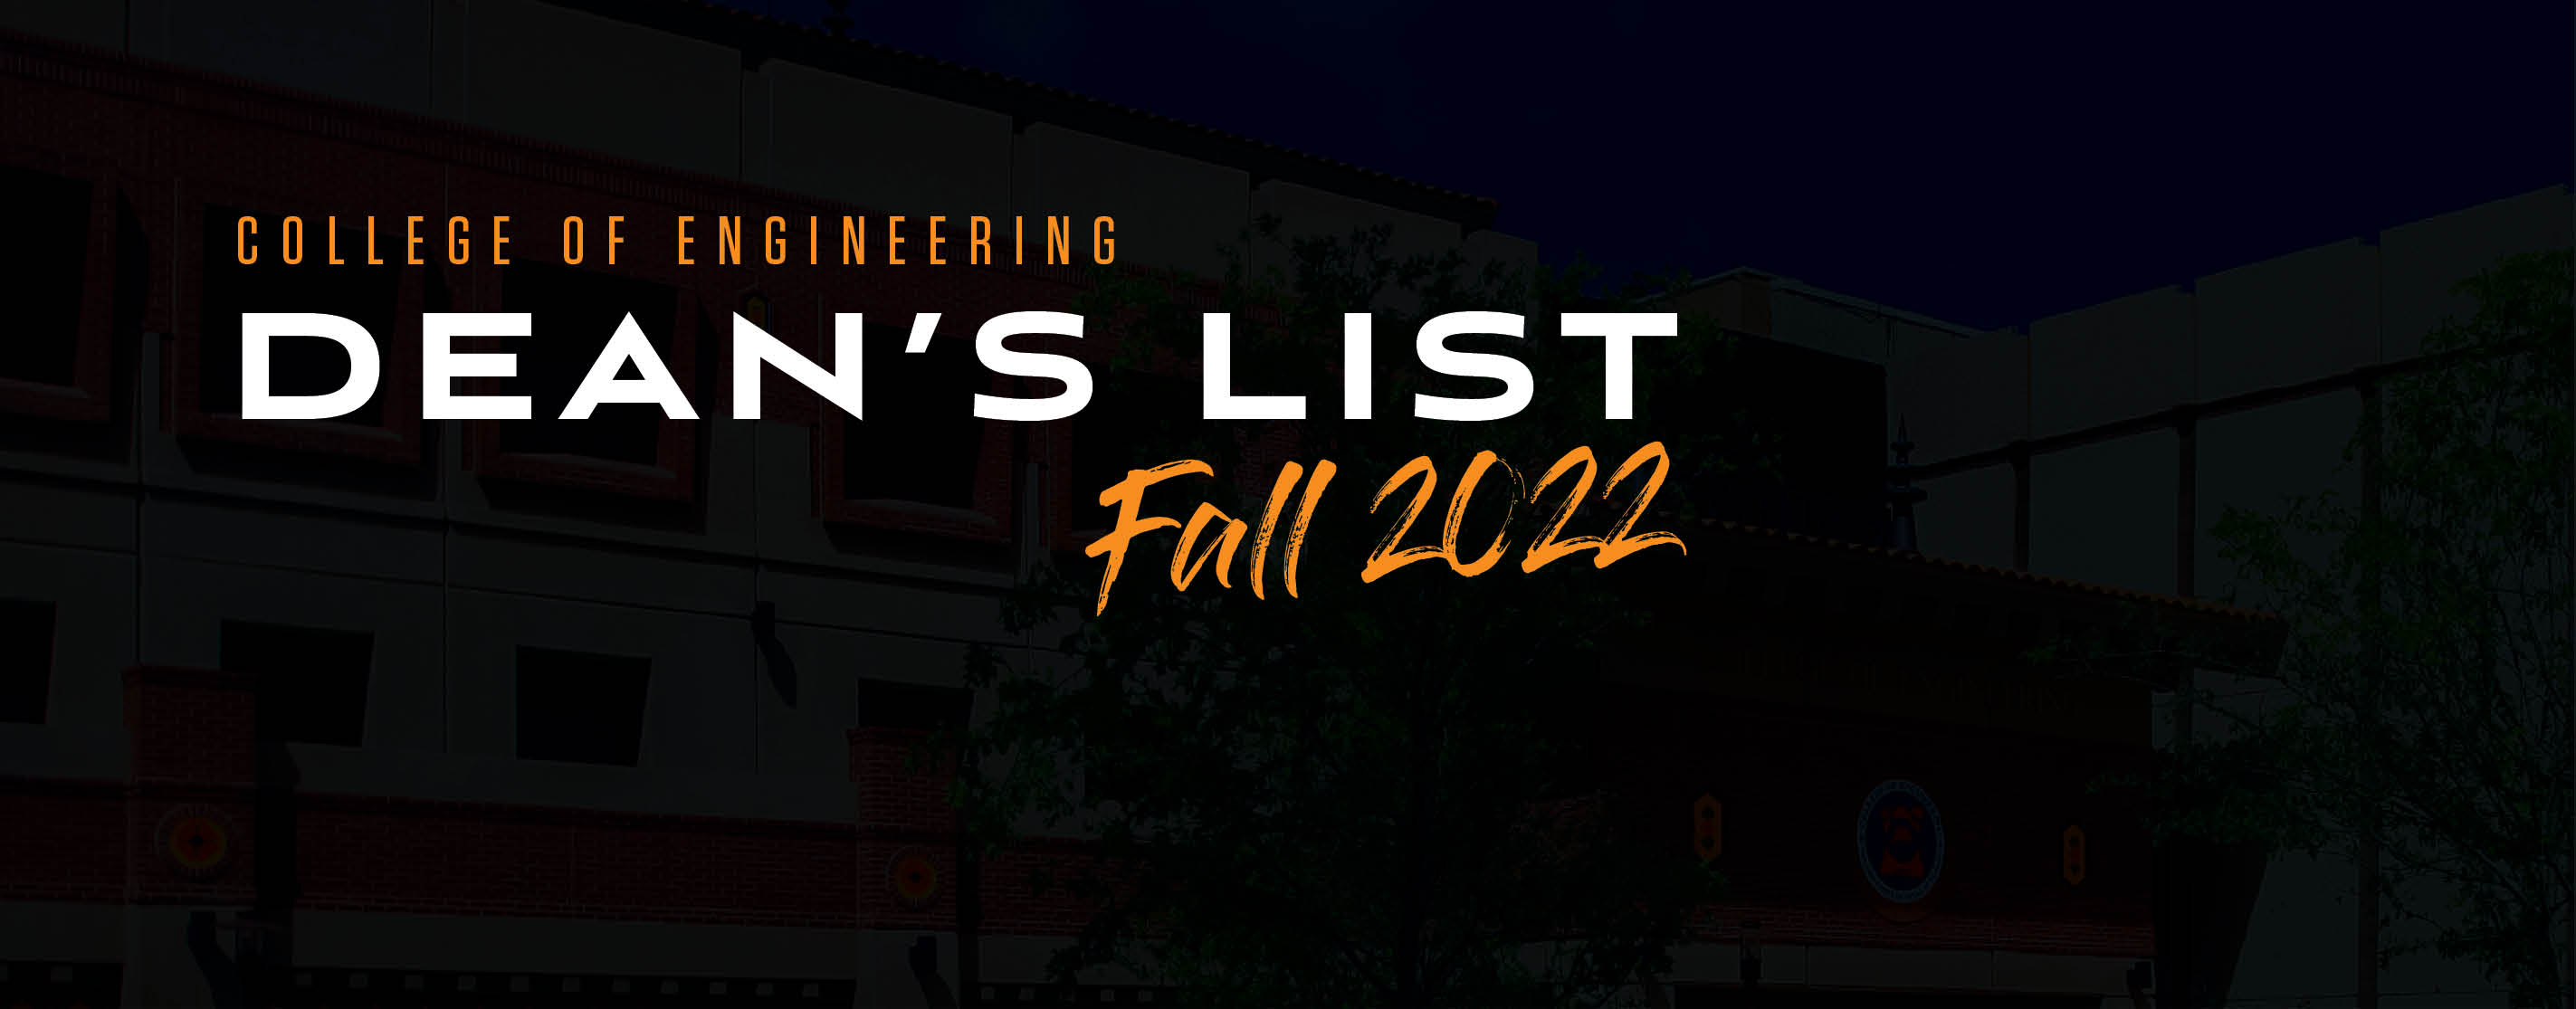 Dean's List Fall 2022 